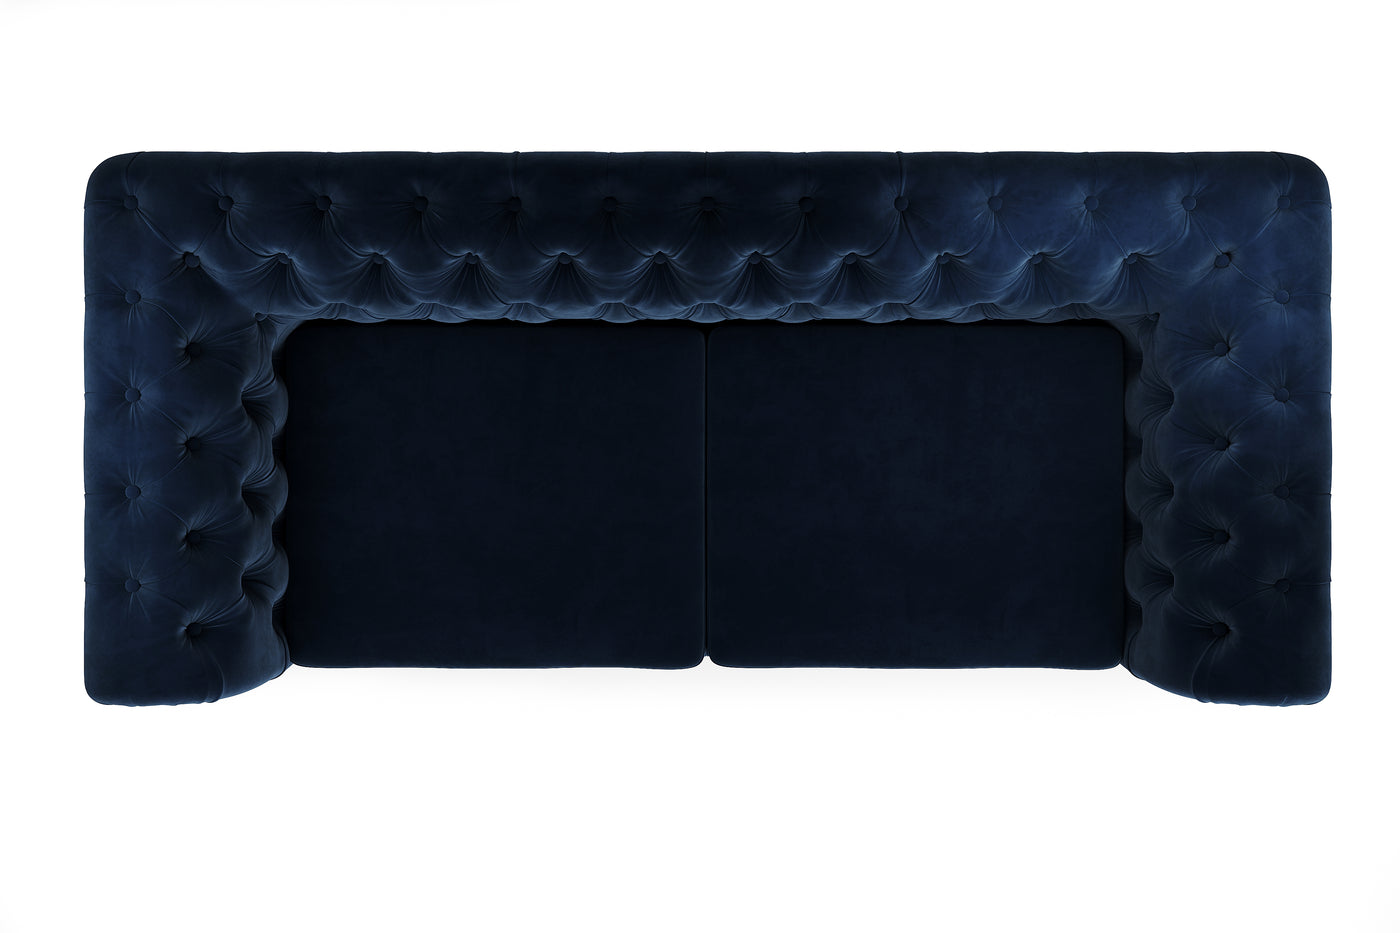 Paris Chesterfield Sofa Set 3+2+1 (Navy Blue Velvet) (7720601321726)